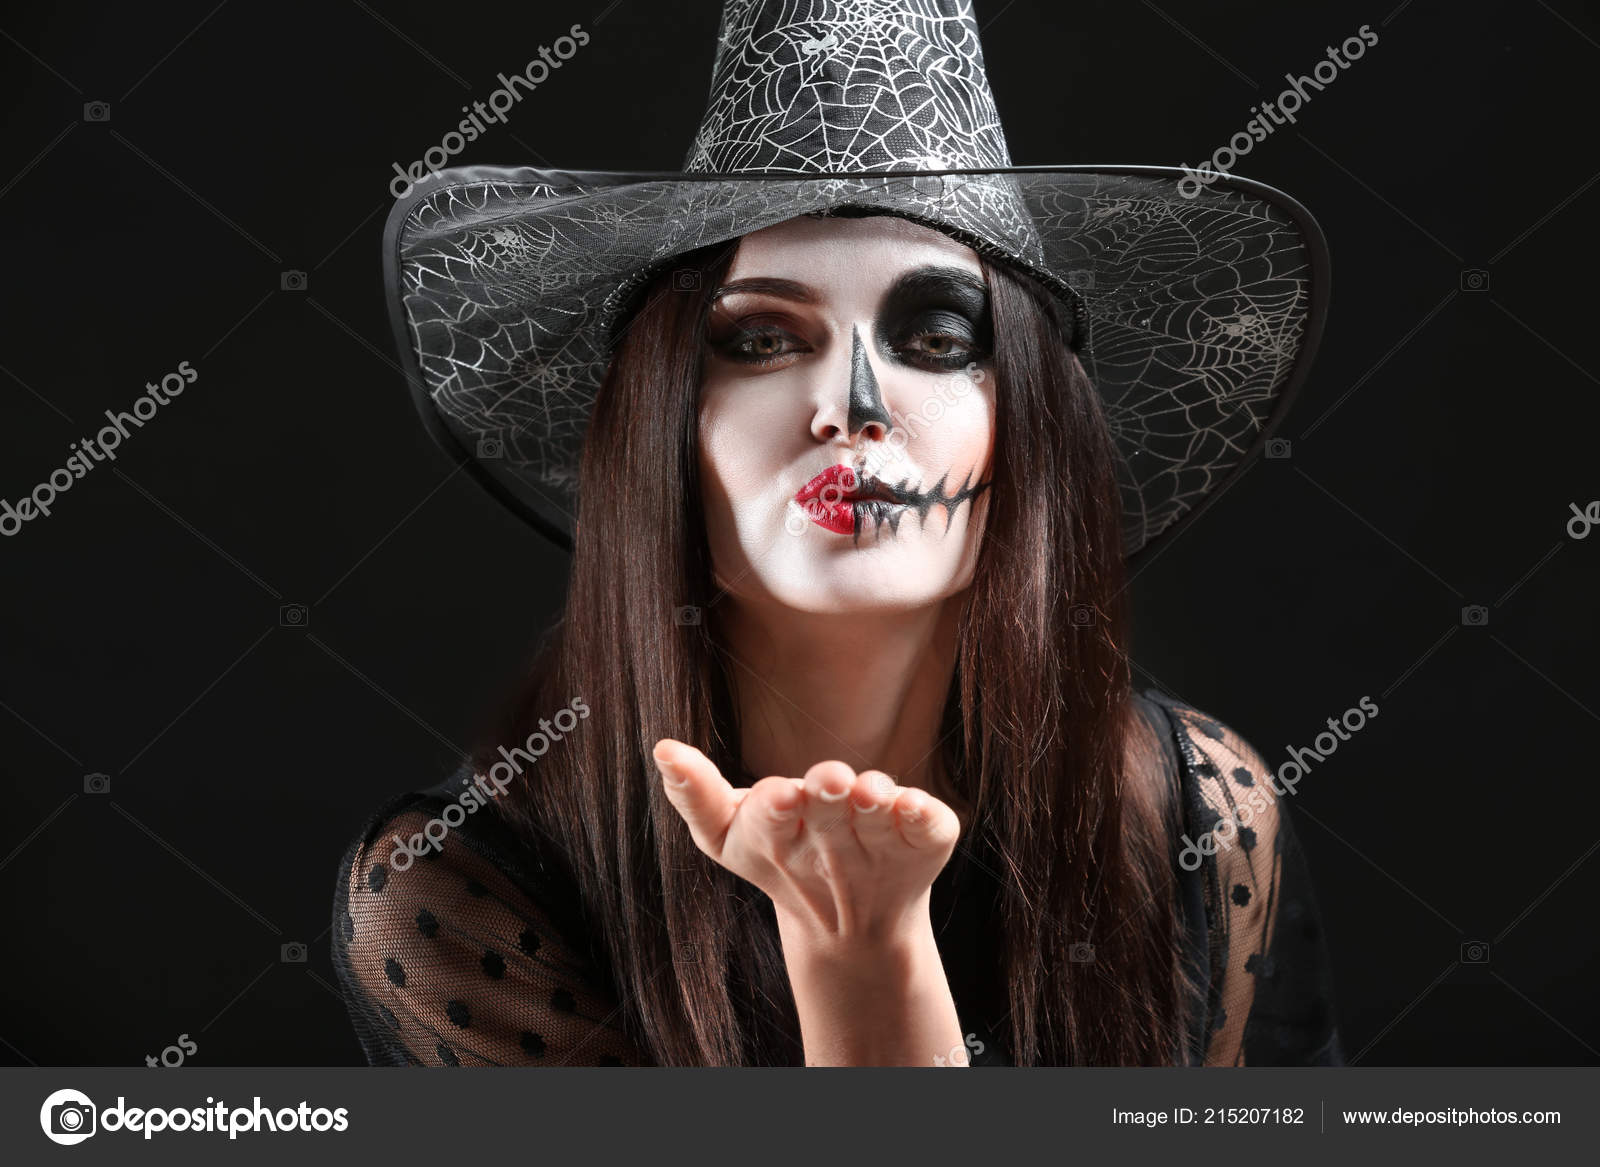 Mulheres De Chapéu No Quarto Da Bruxa No Halloween Imagem de Stock